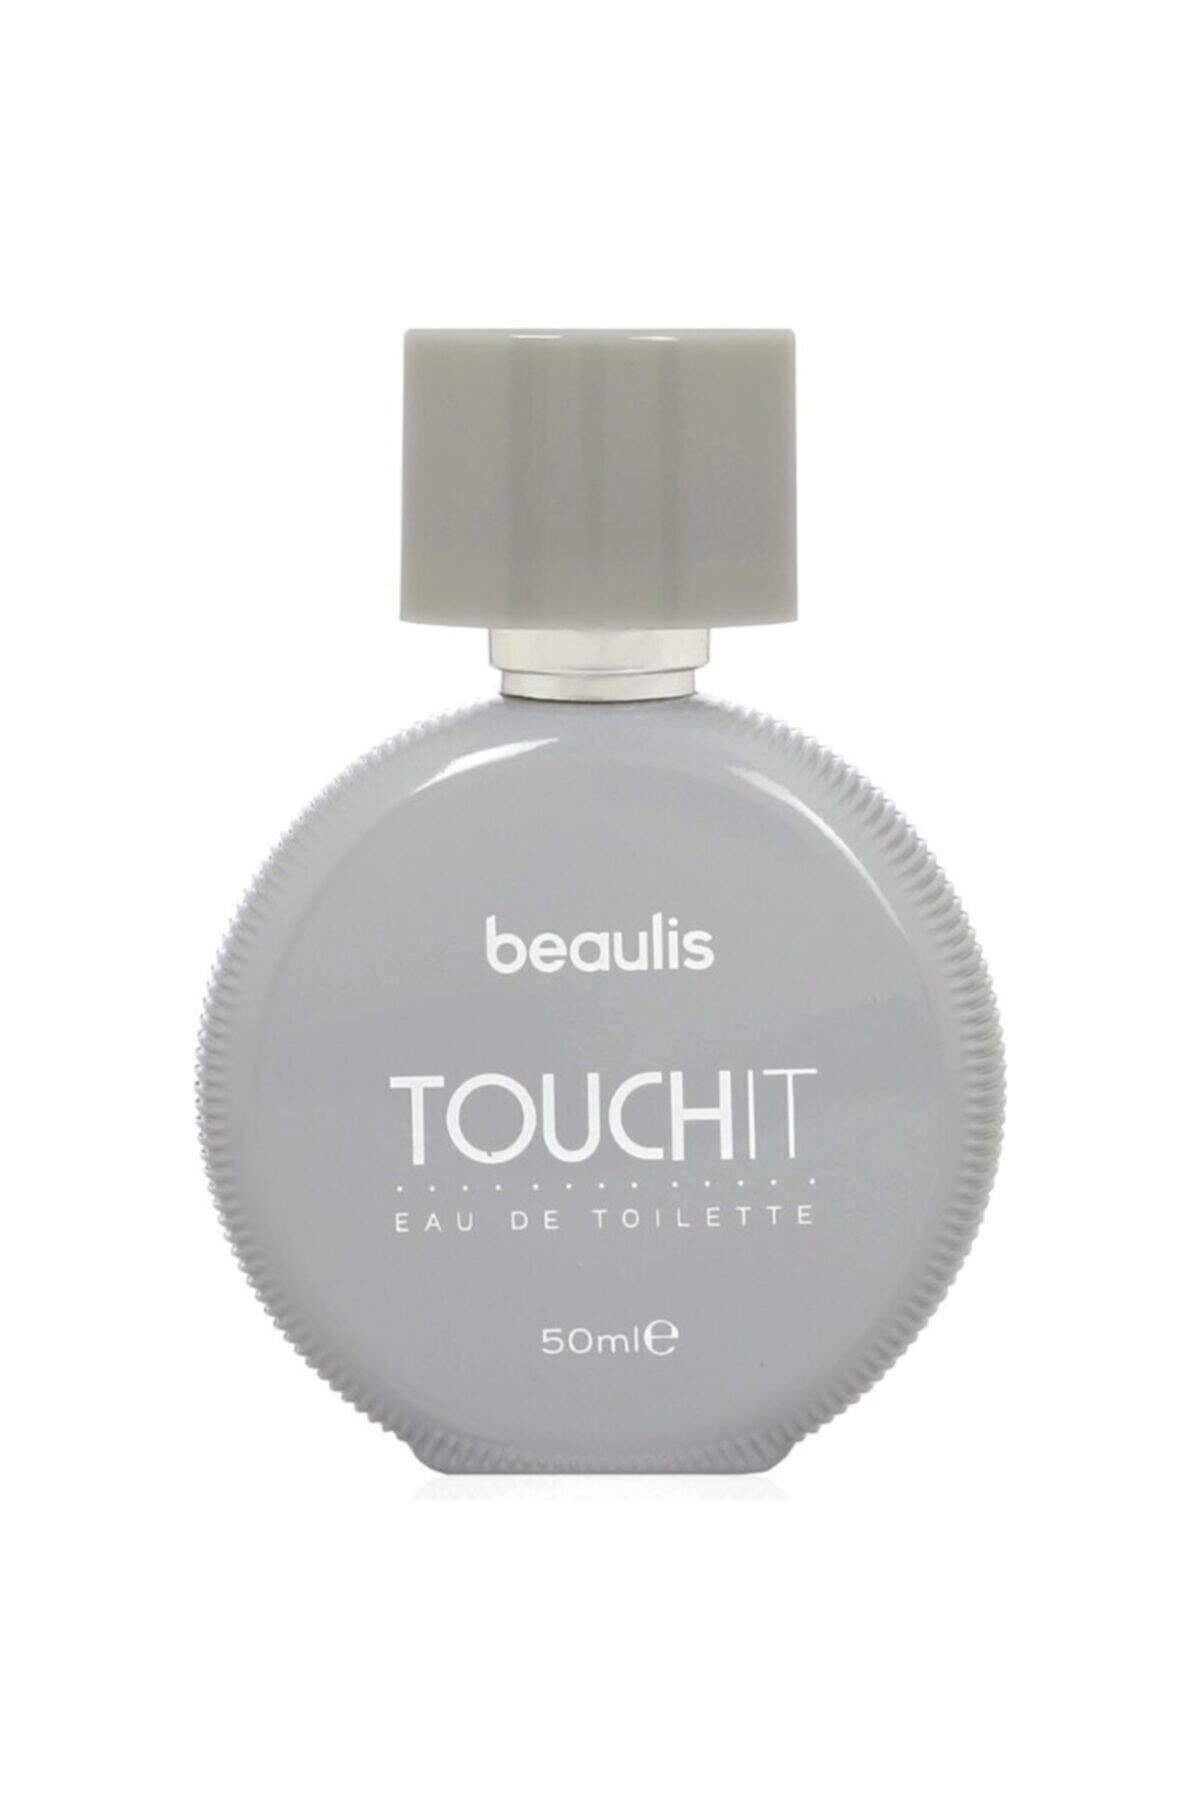 beaulis Teenage Touch It Edt Kadın Parfüm 50 ml 10557374-2